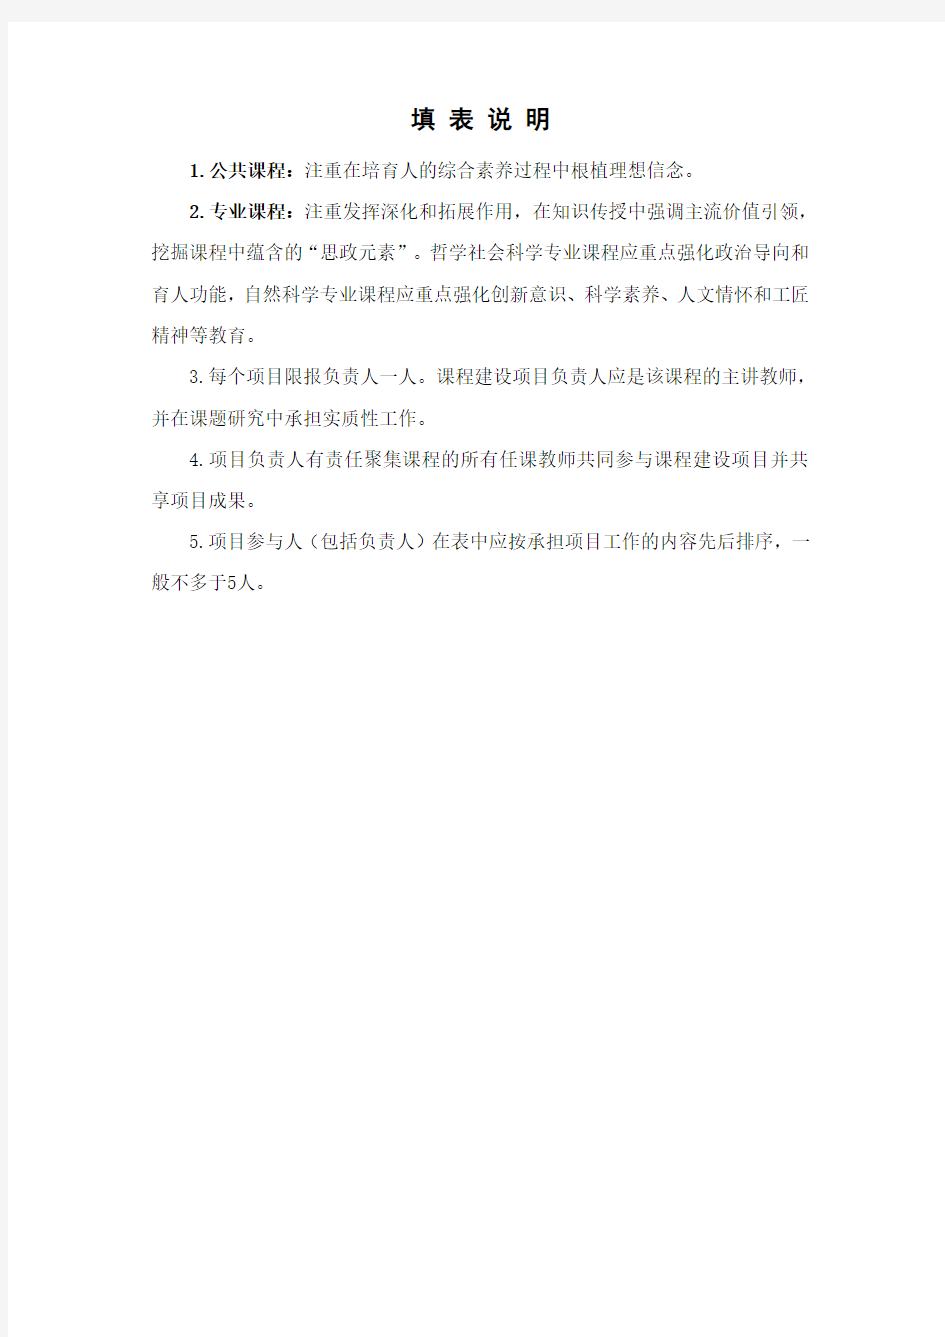 广州大学研究生课程思政示范课程建设立项申报书